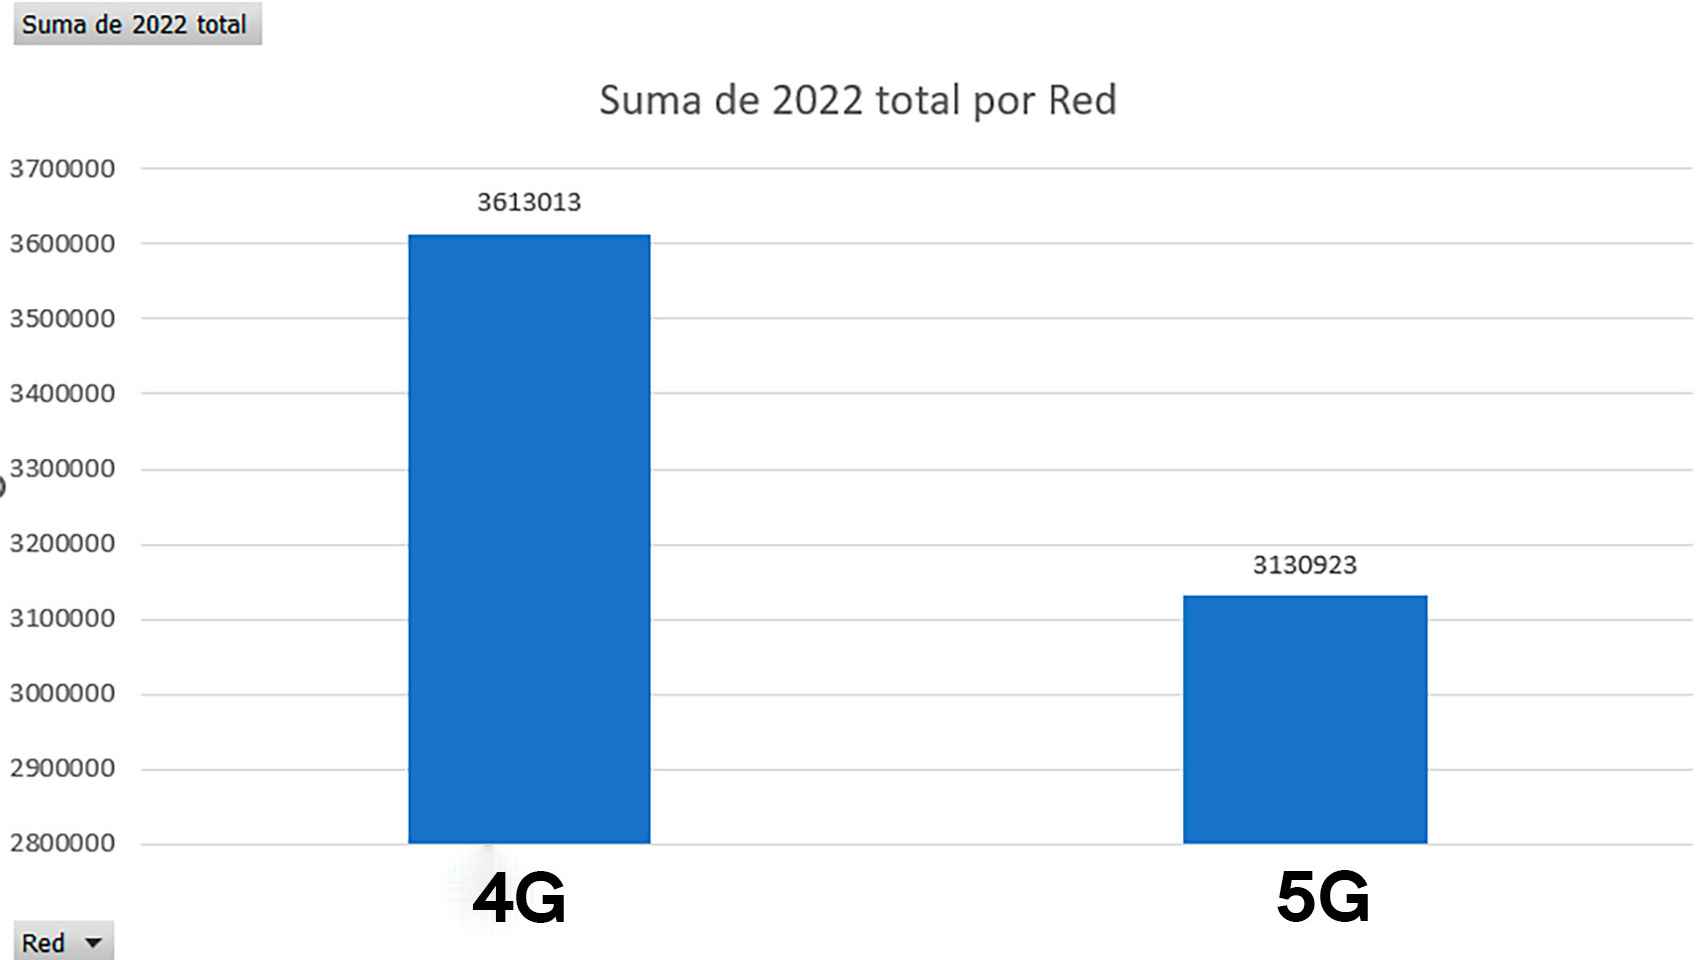 Diferencia de ventas entre móviles 4G y 5G en España